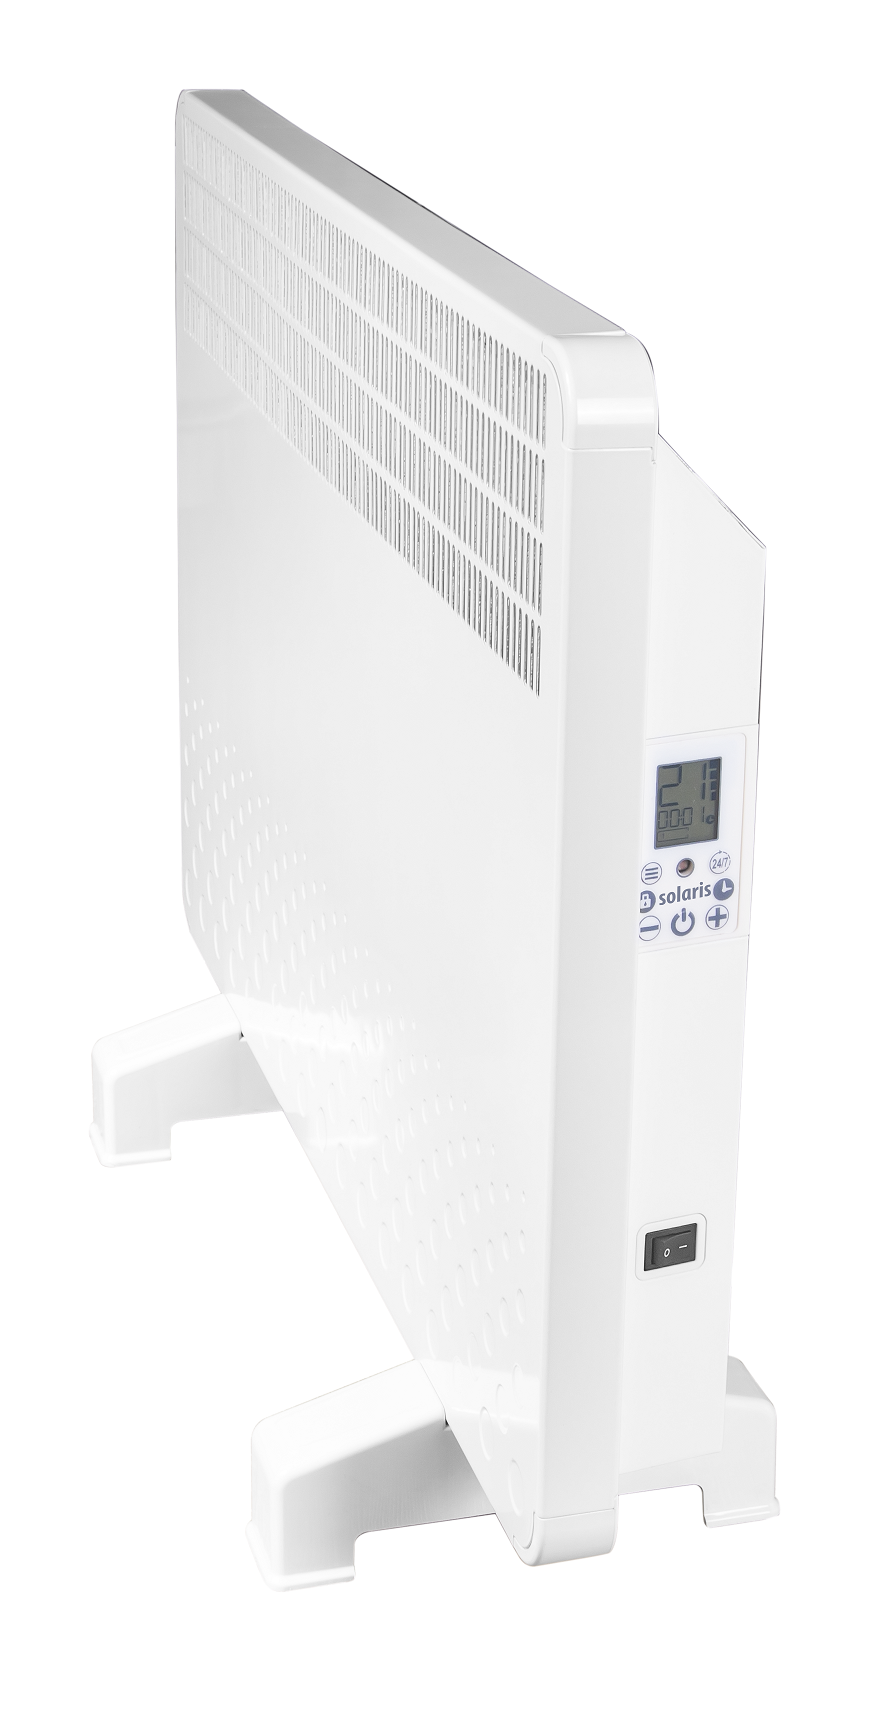 Convector electric de perete sau pardoseala Solaris KIP 2000 W, control electronic, Termostat de siguranta, termostat reglabil, IP 24, ERP 2018, pentru 24 mp fornello.ro/